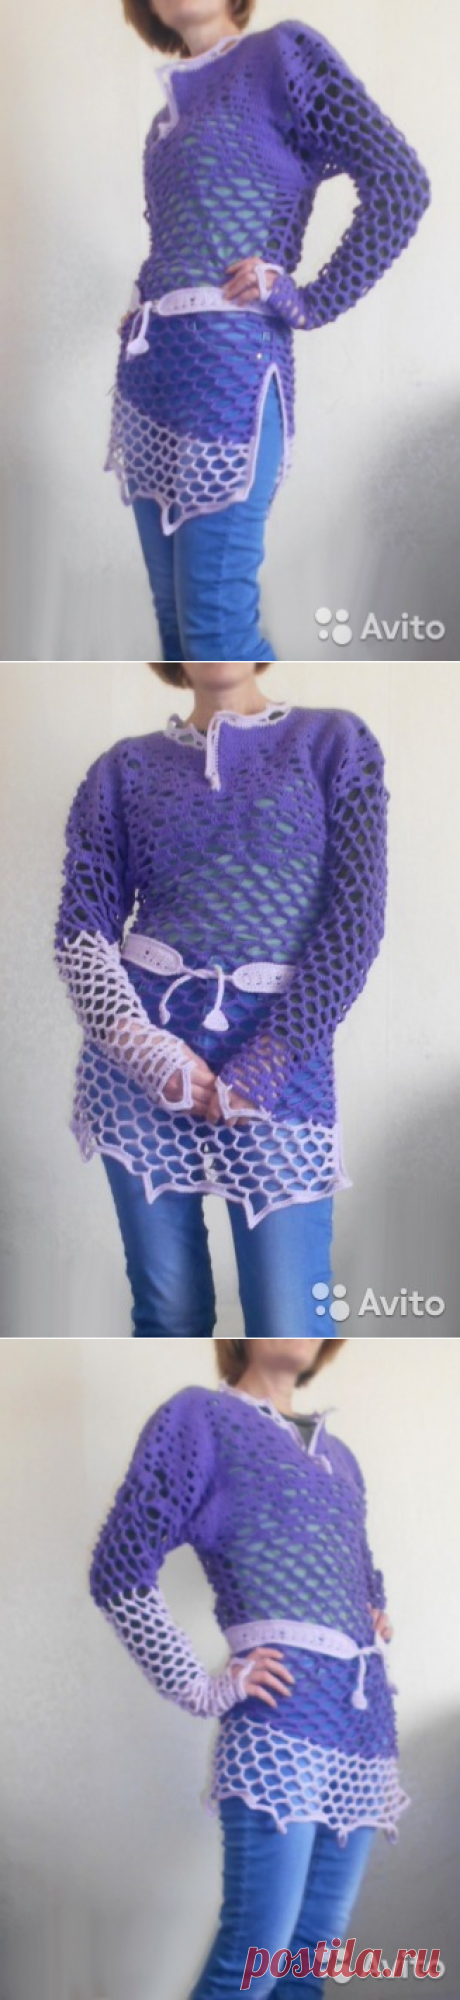 Летний пуловер-туника купить в Москве на Avito — Объявления на сайте Avito